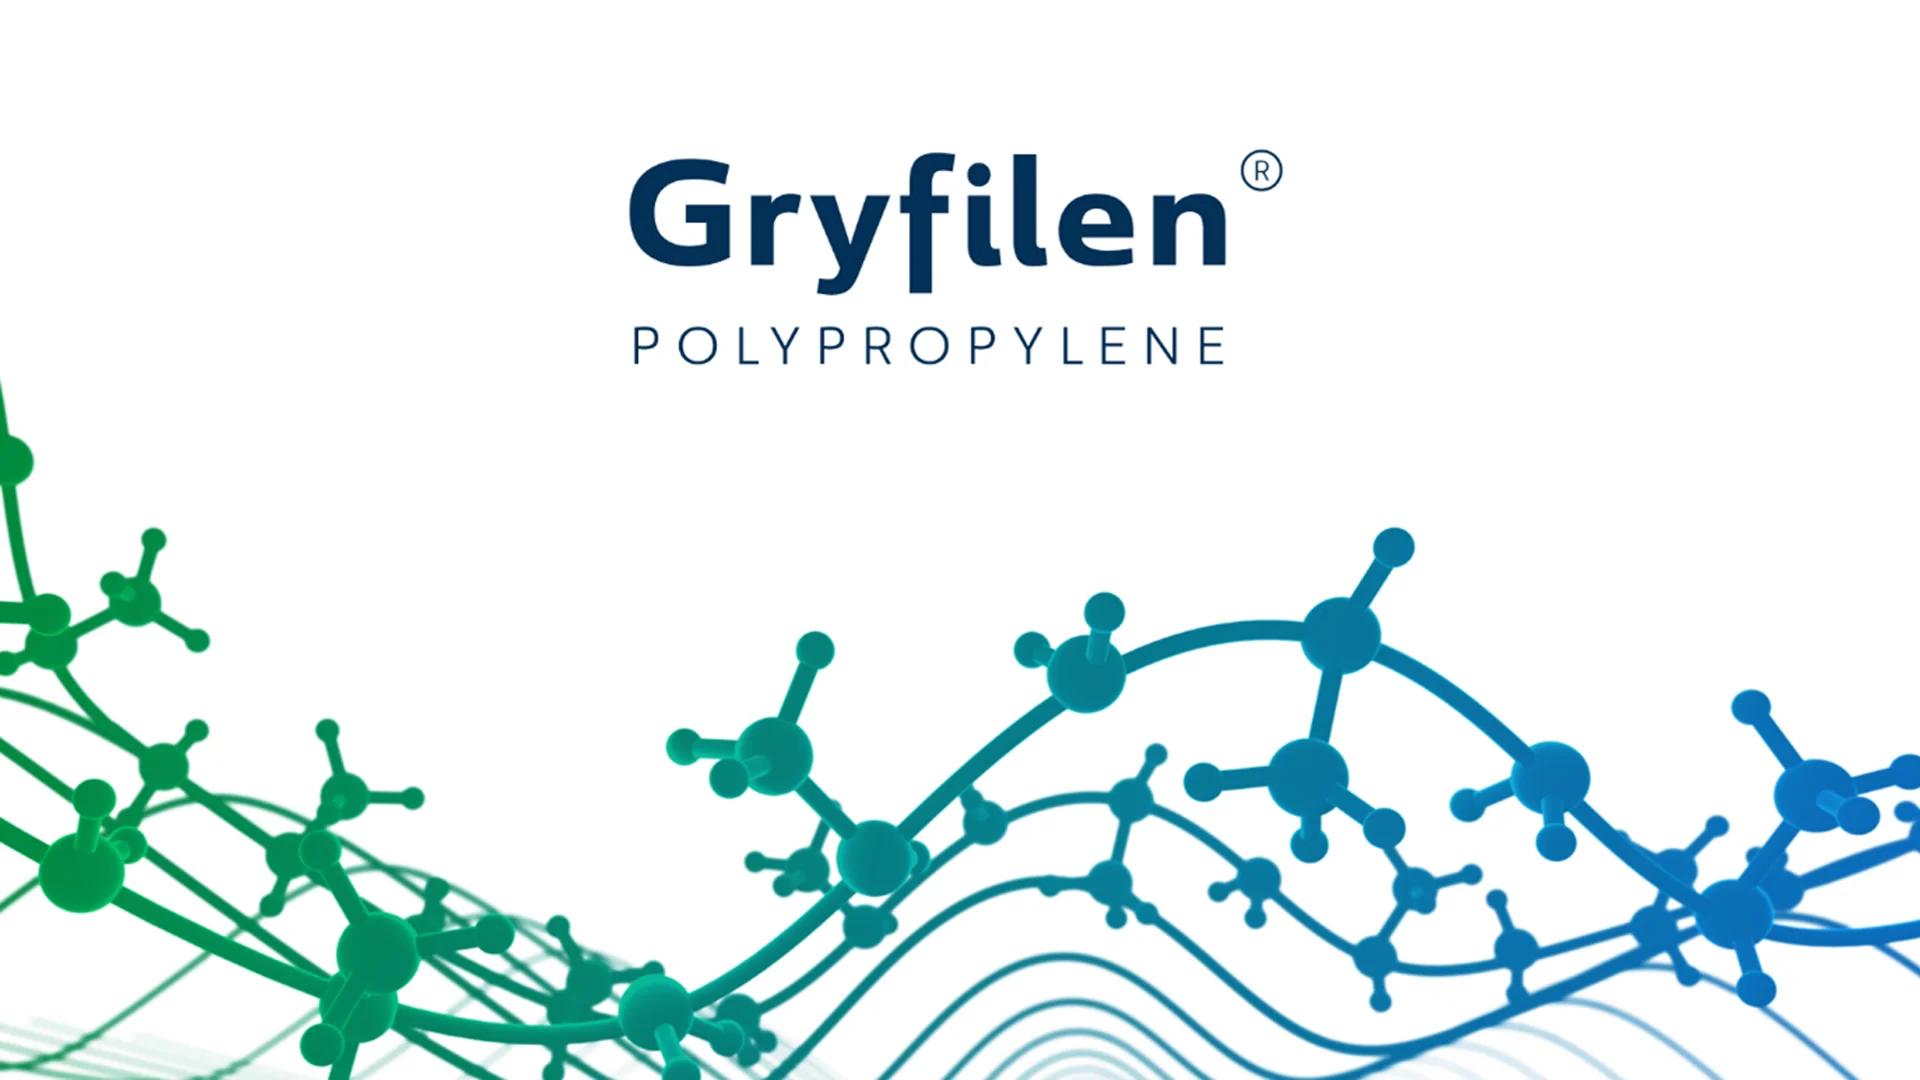 polipropylen pod nazwą Gryfilen